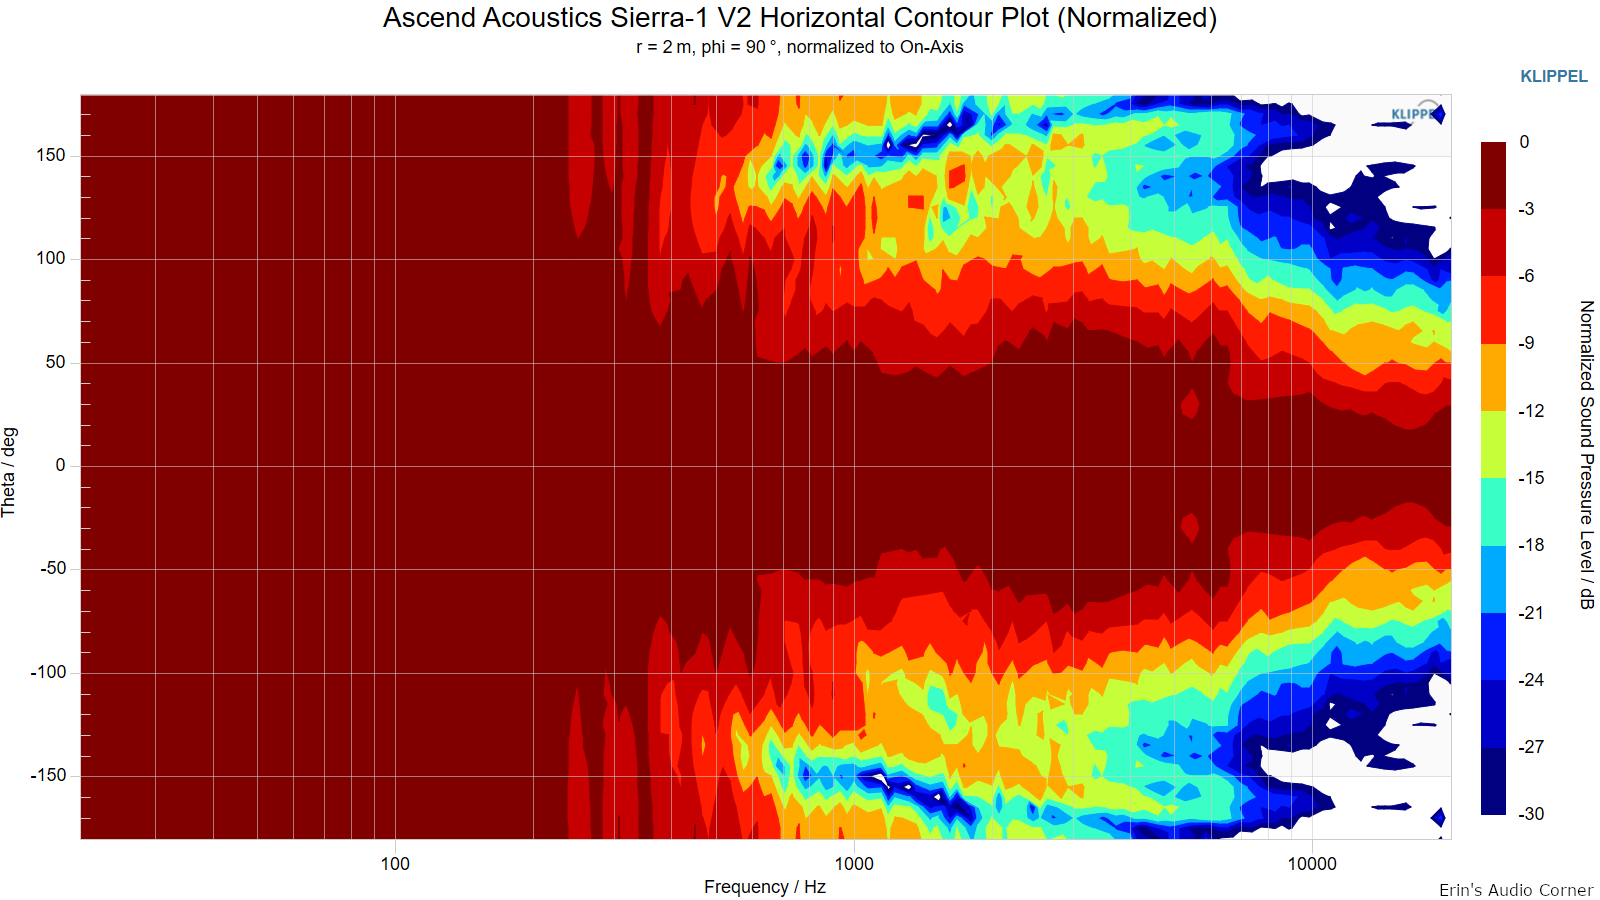 Ascend-Acoustics-Sierra-1-V2-Horizontal-Contour-Plot-Normalized.png